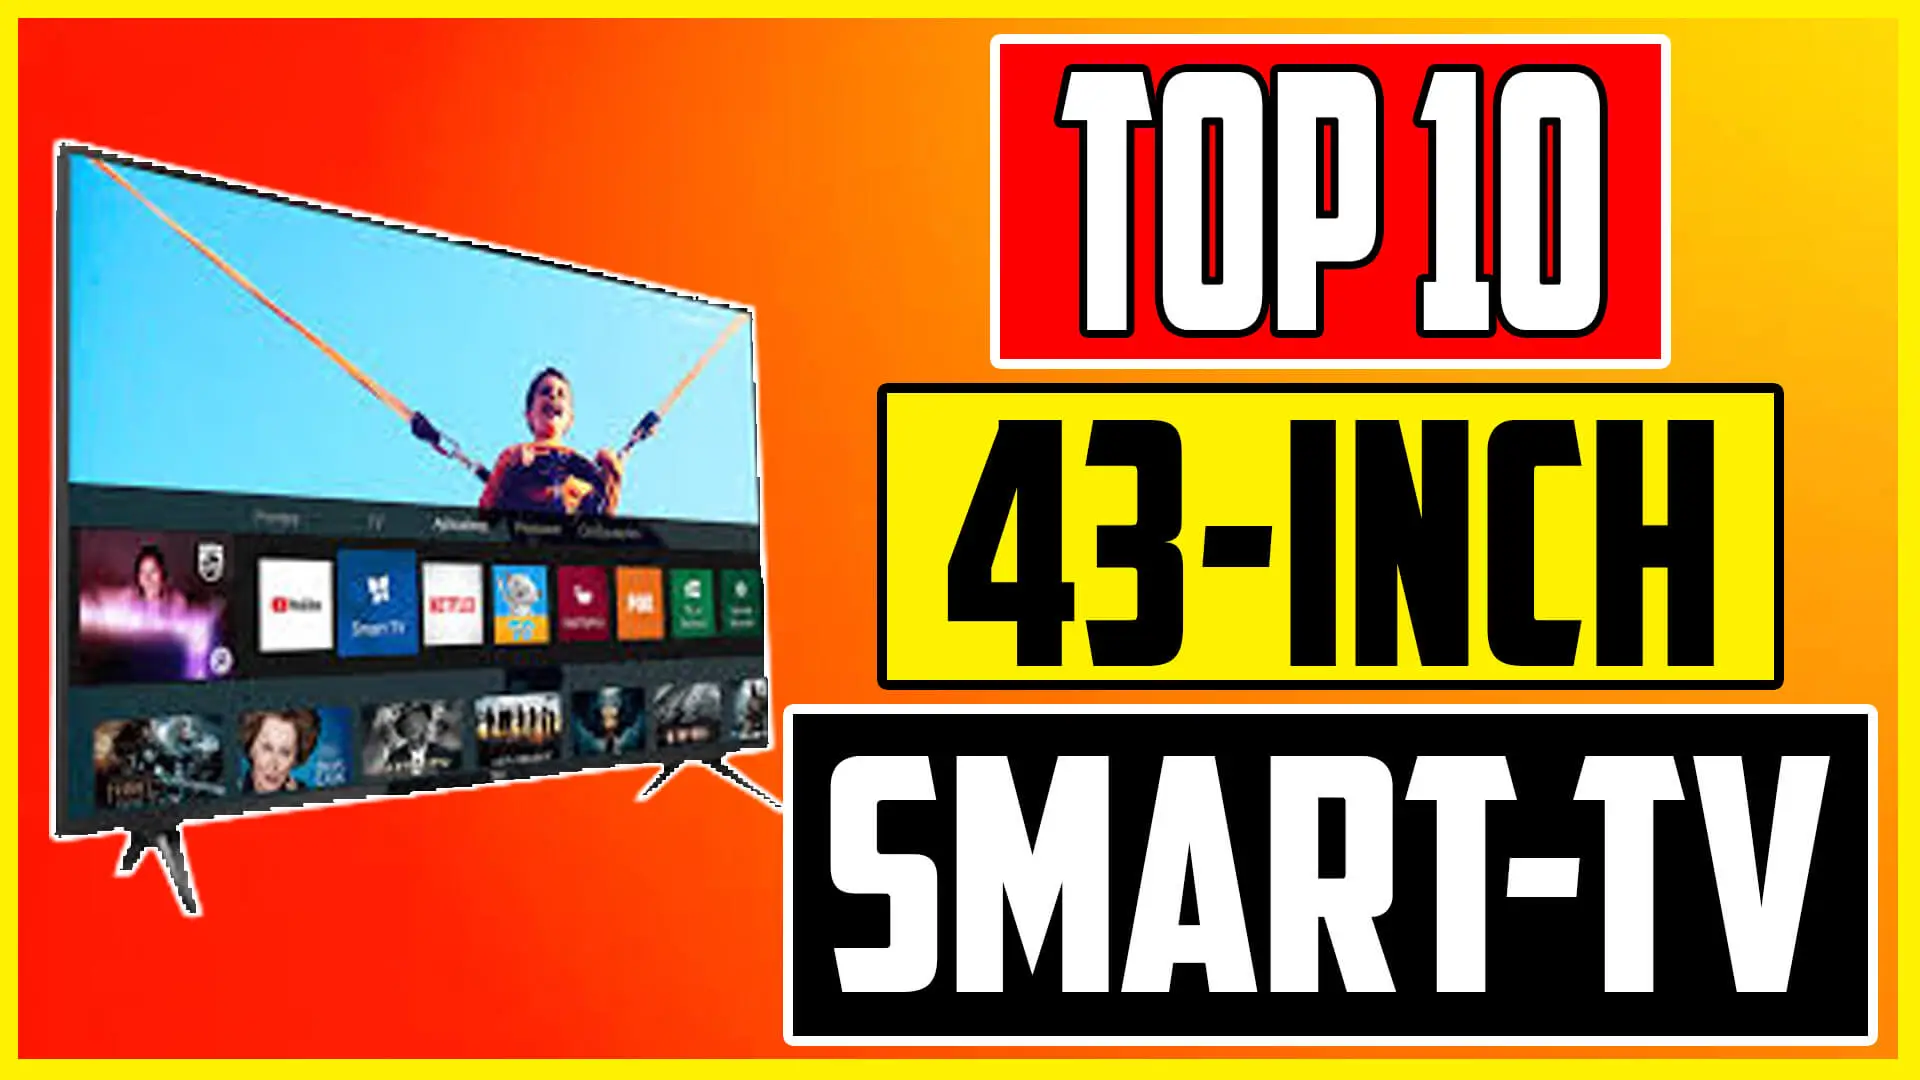 Best 43 Inch Smart TV 2023